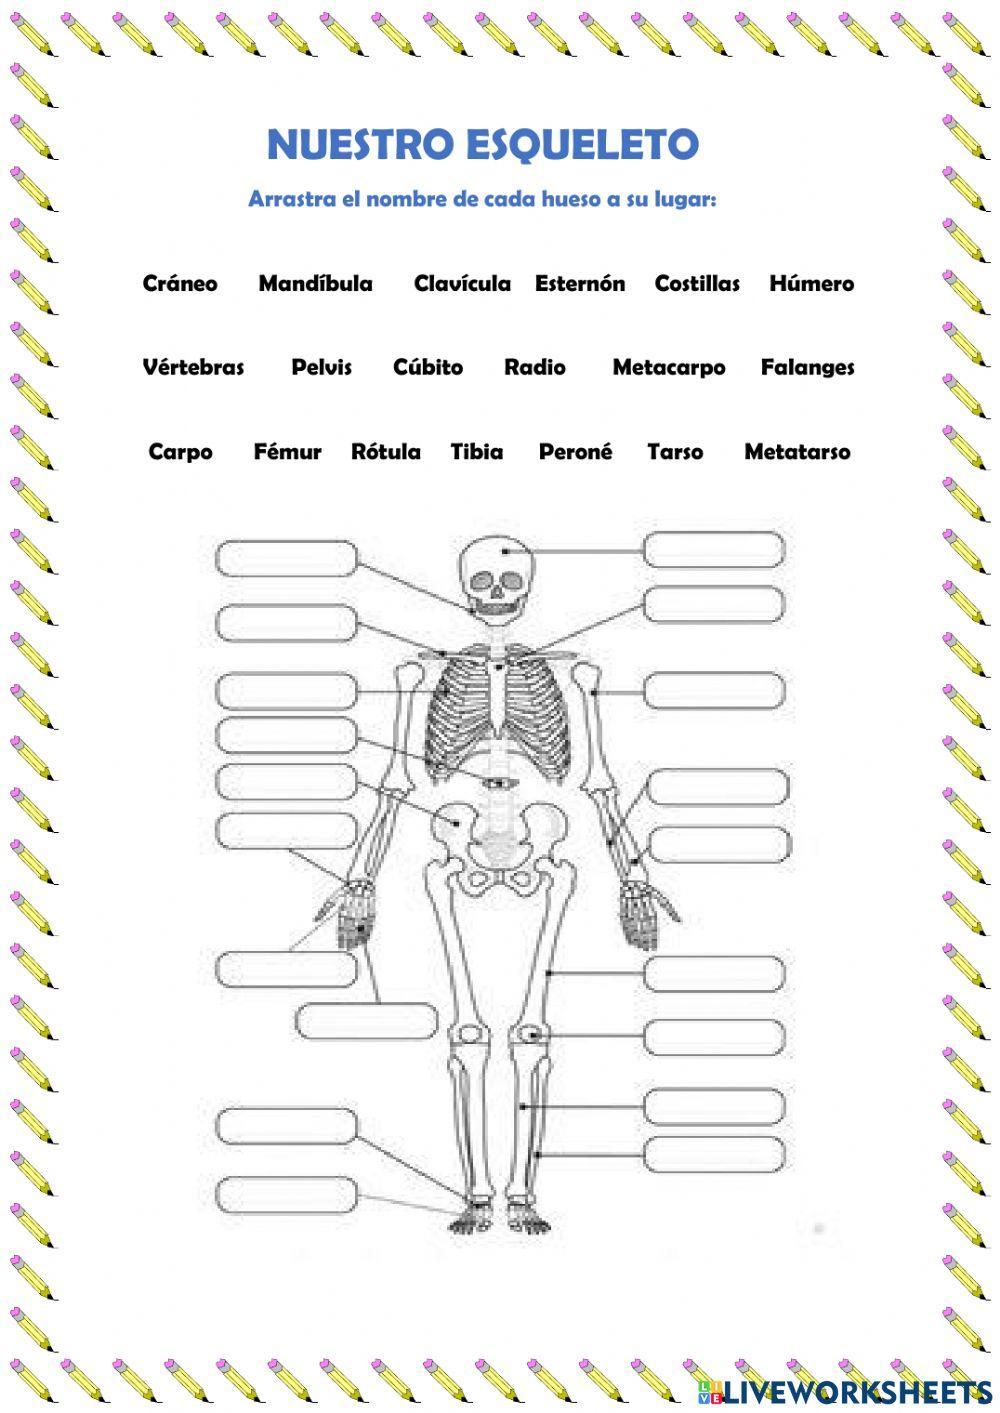 Nuestro esqueleto